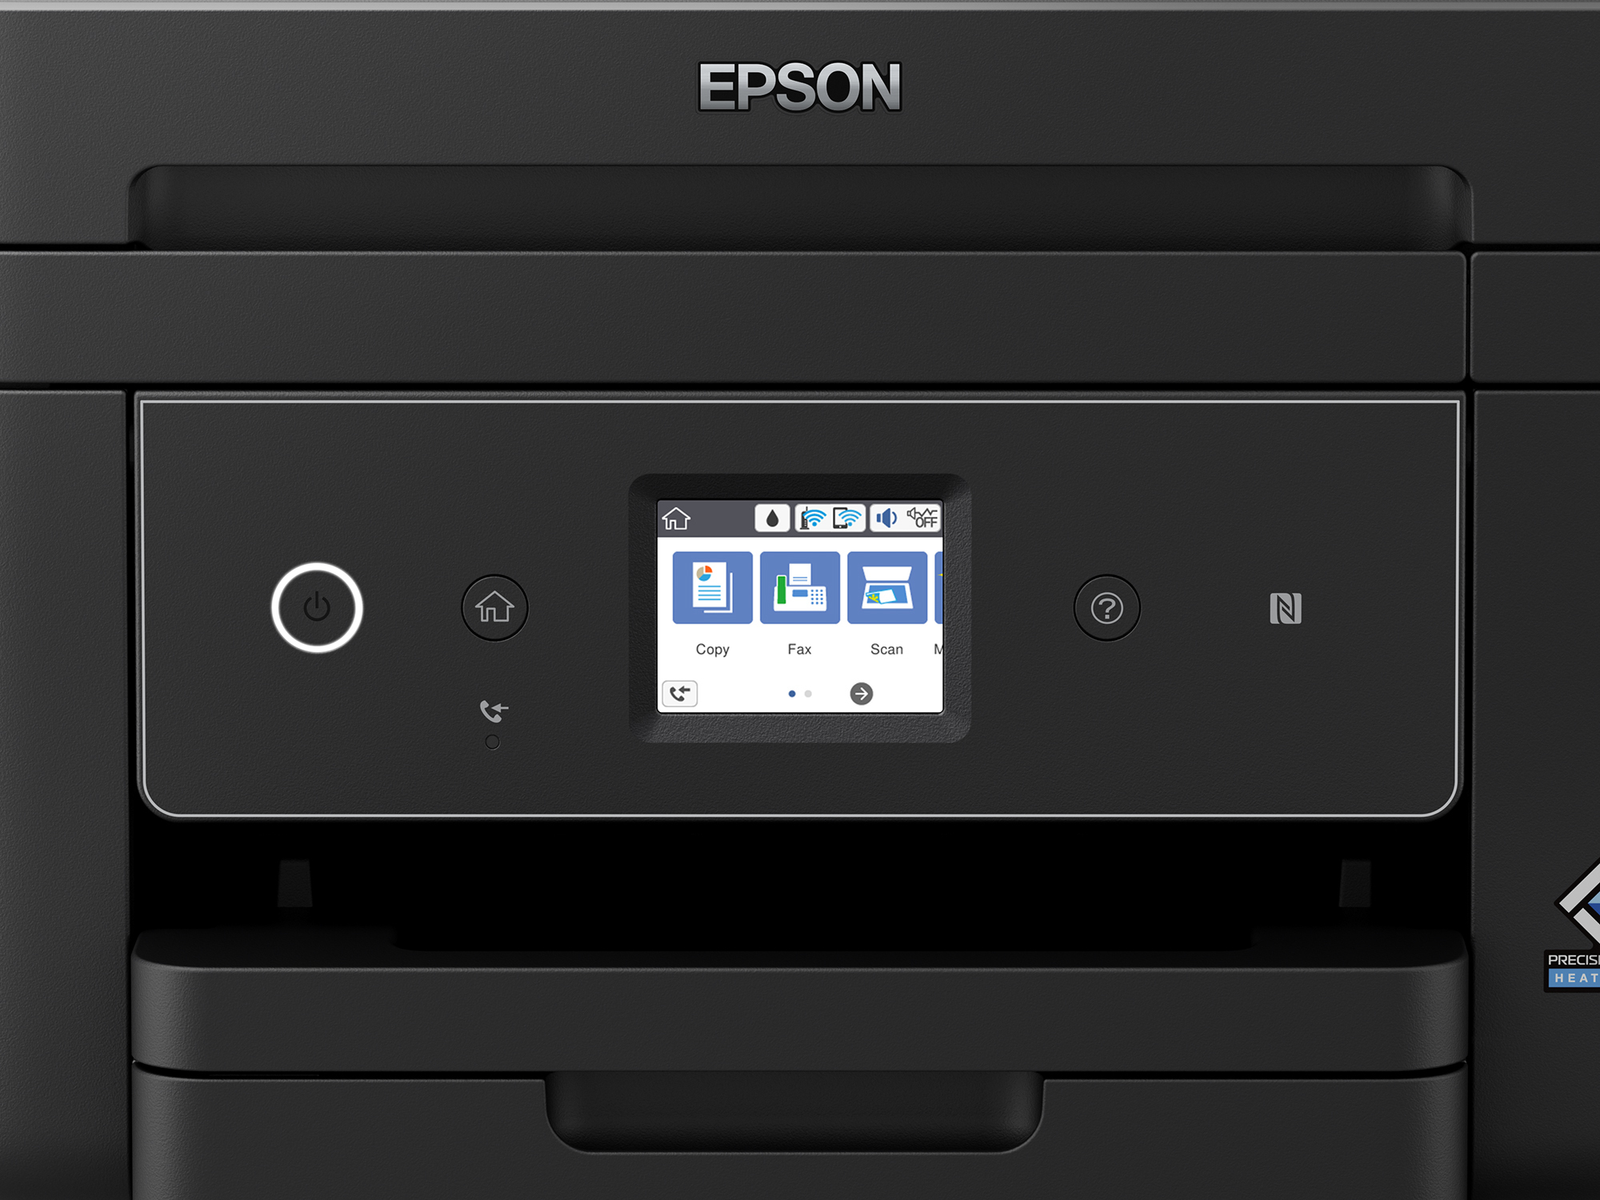 EPSON WF-2880DWF Tintenstrahldruck WLAN Drucker, 4in1 Netzwerkfähig Tintenstrahl-Multifunktionsdrucker